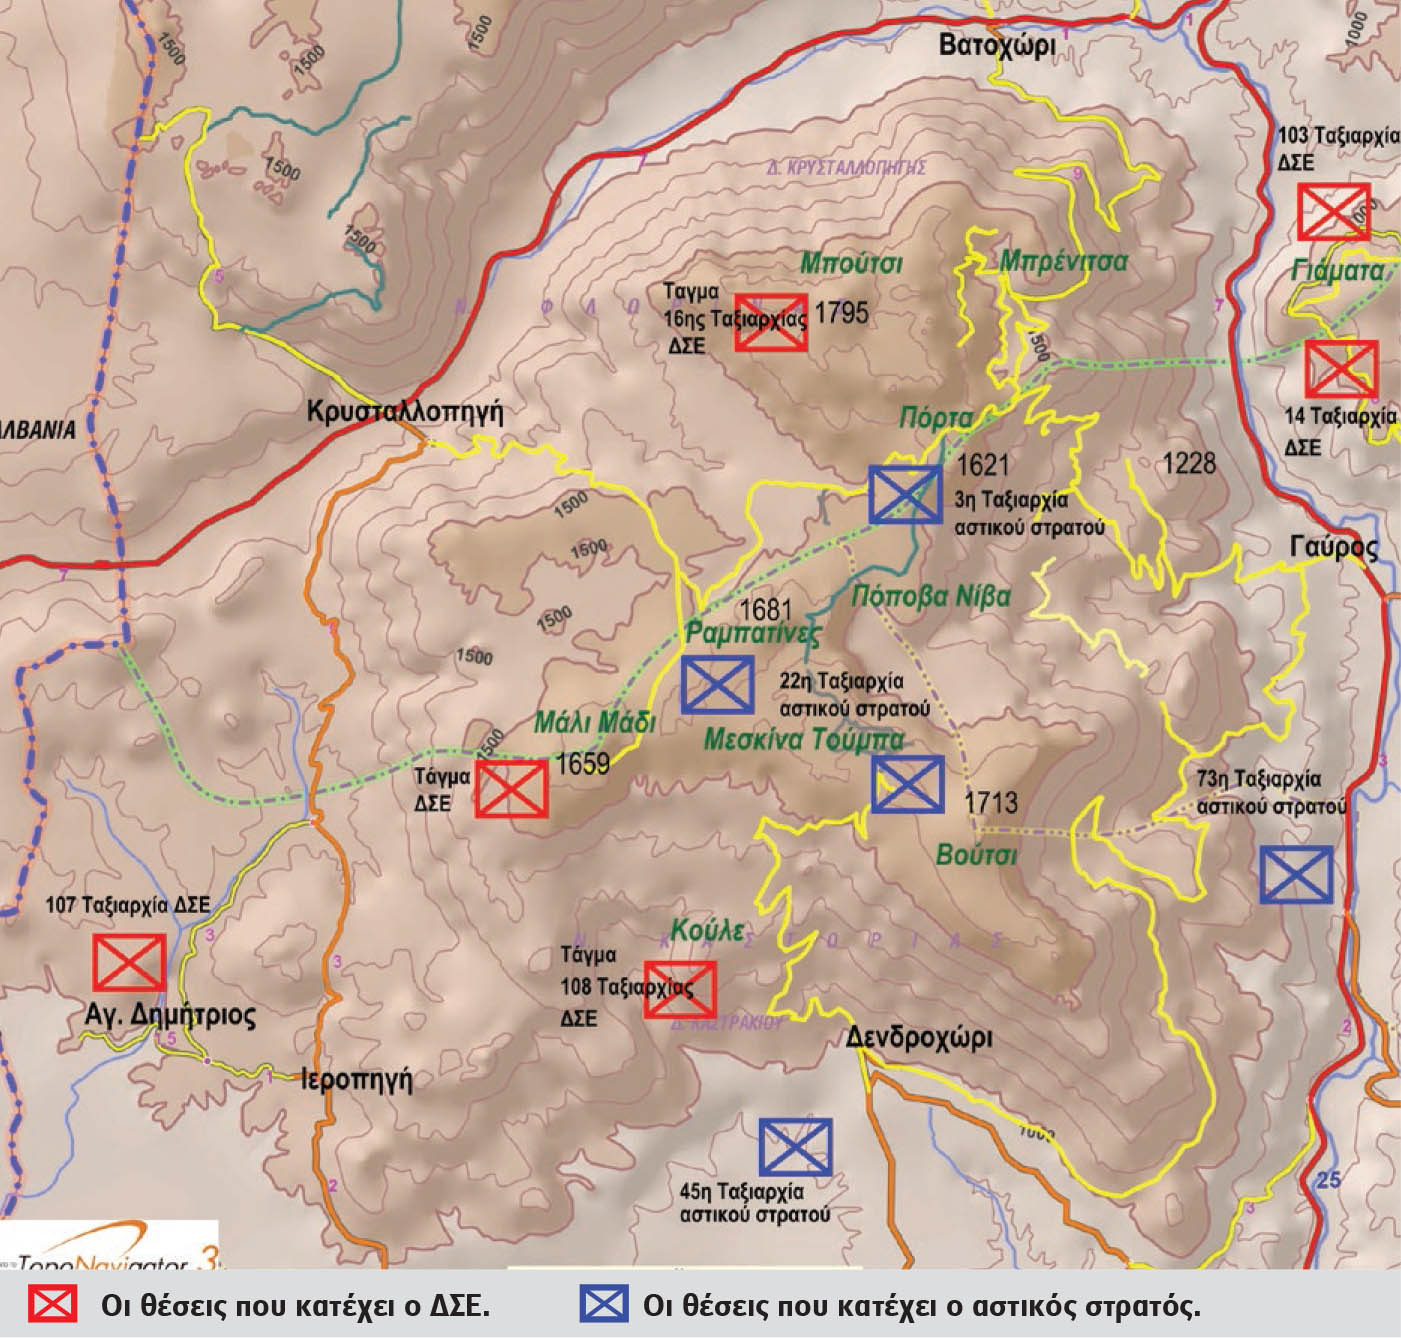 Στον χάρτη αποτυπώνονται οι δυνάμεις και οι θέσεις τους το απόγευμα της 9ης Σεπτέμβρη 1948